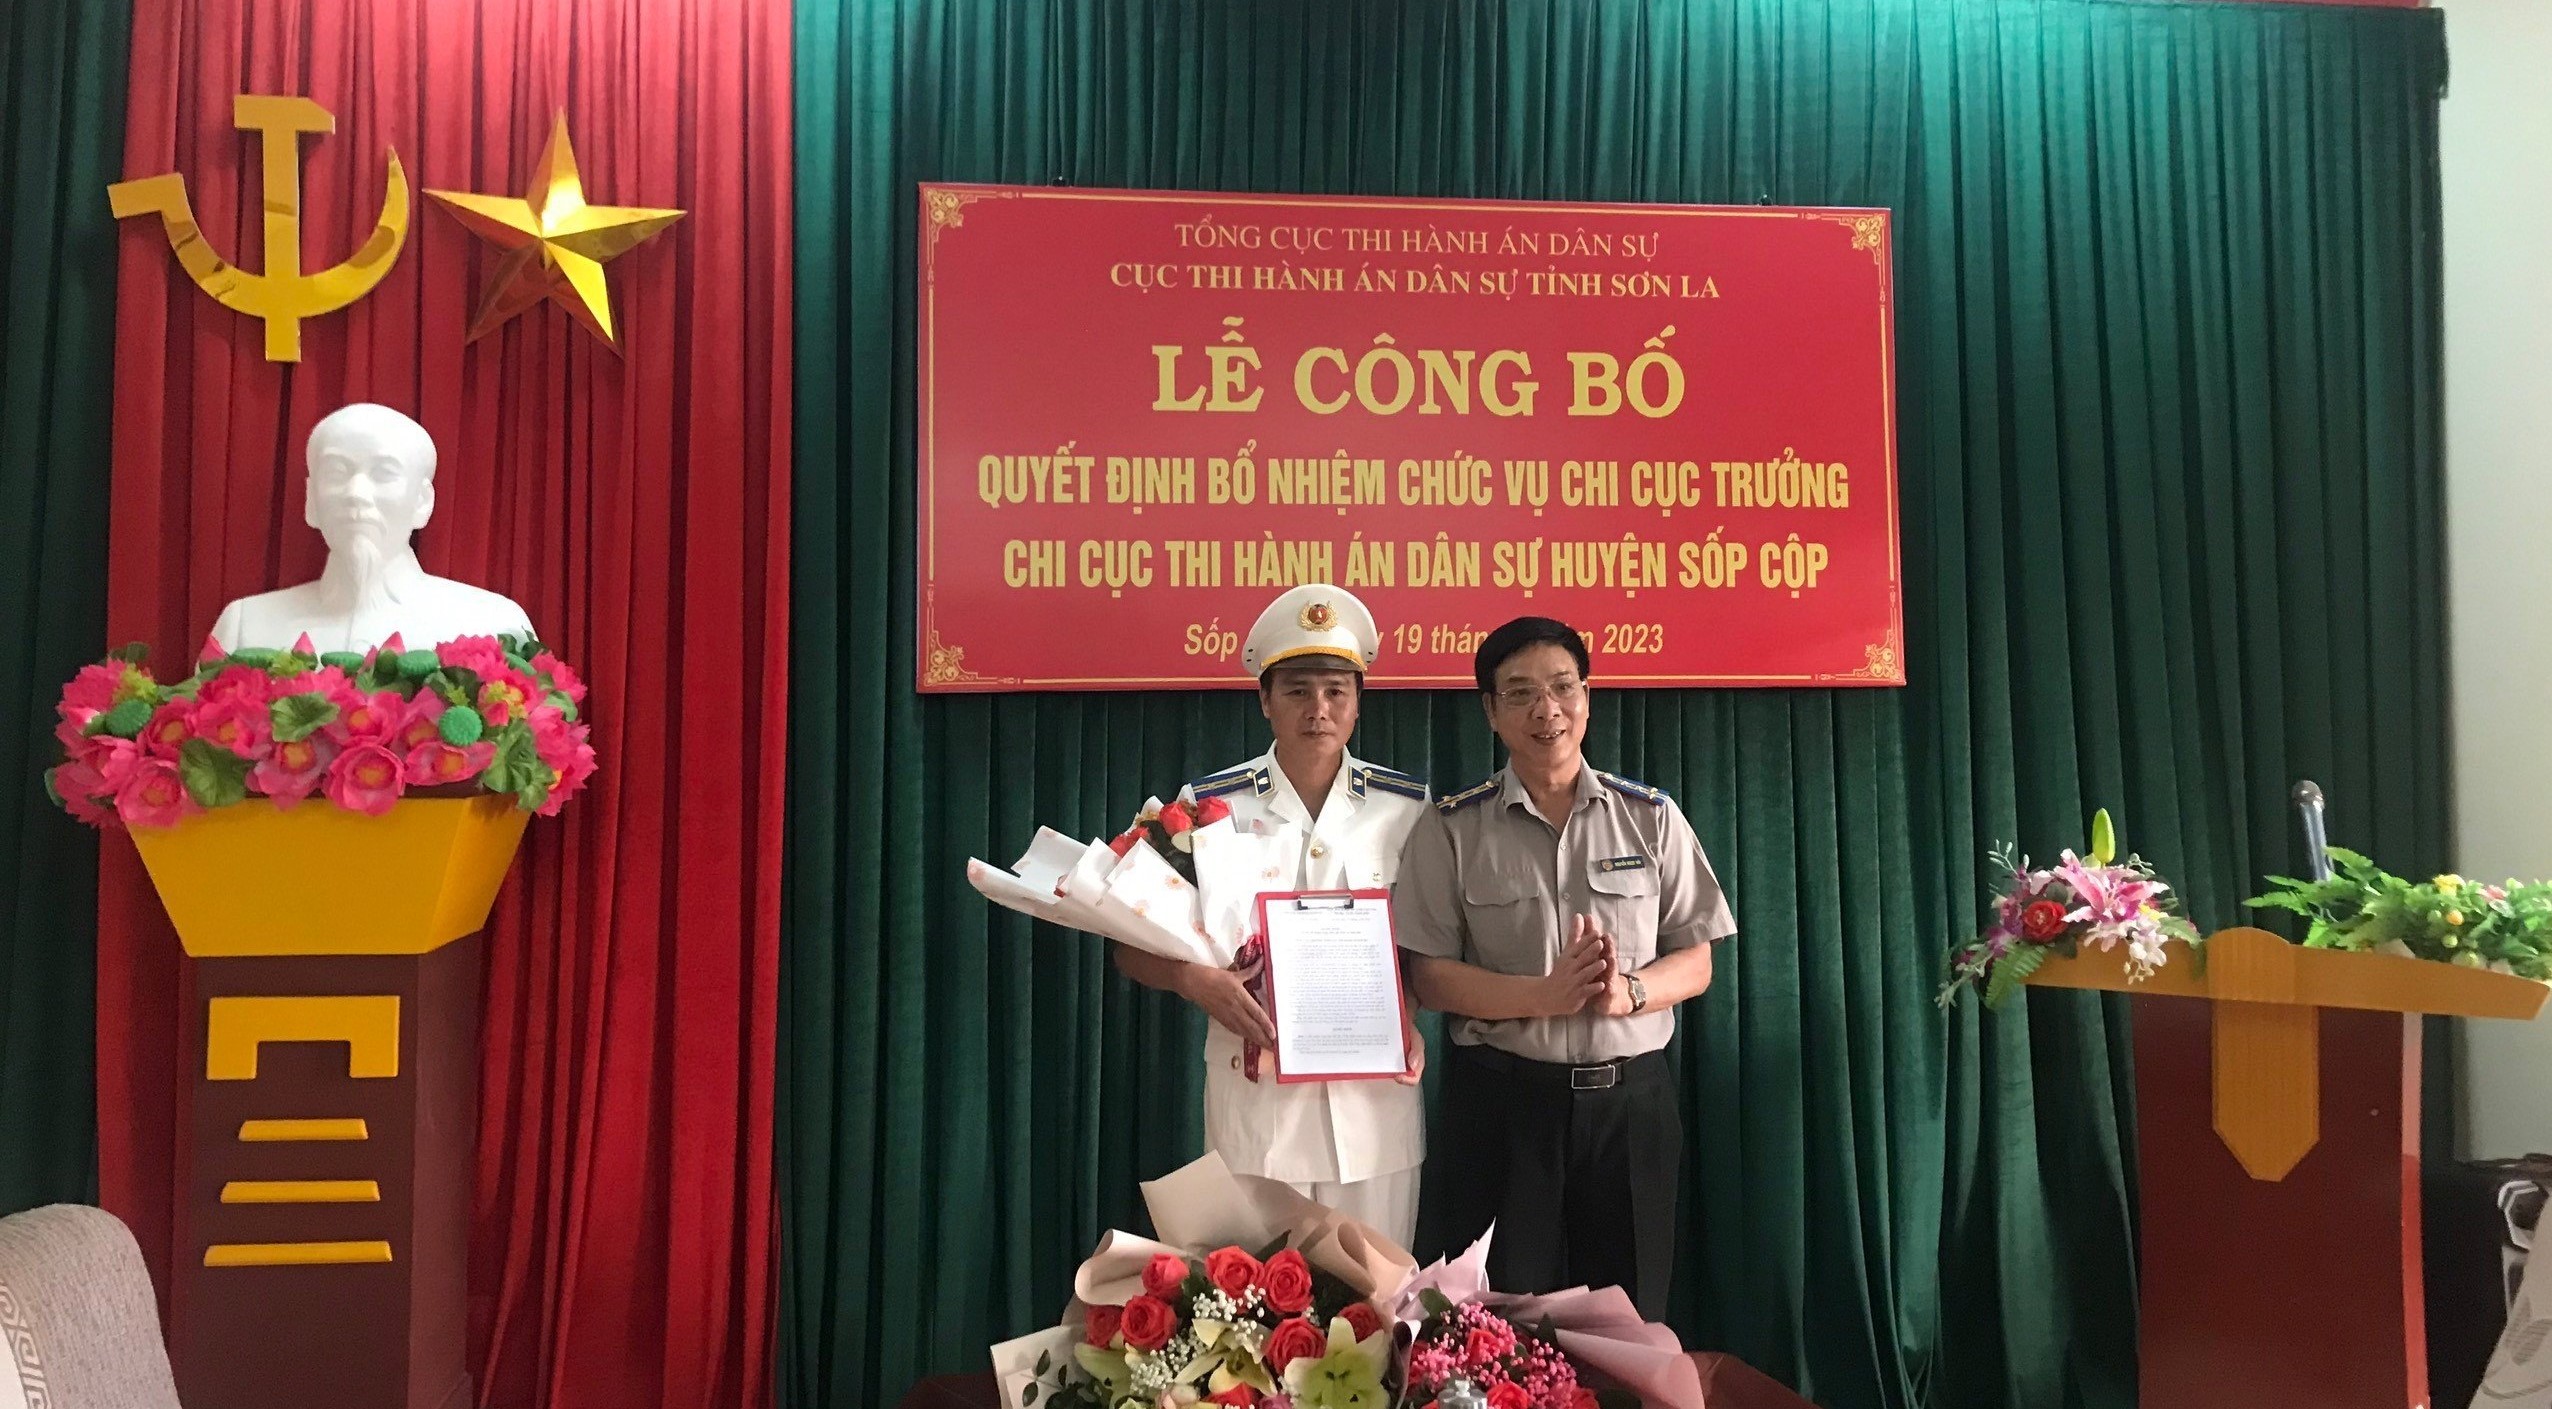 Chi hội luật gia Cục Thi hành án dân sự tỉnh Sơn La tổ chức Đại hội Chi hội luật gia nhiệm kỳ 2020 - 2025.